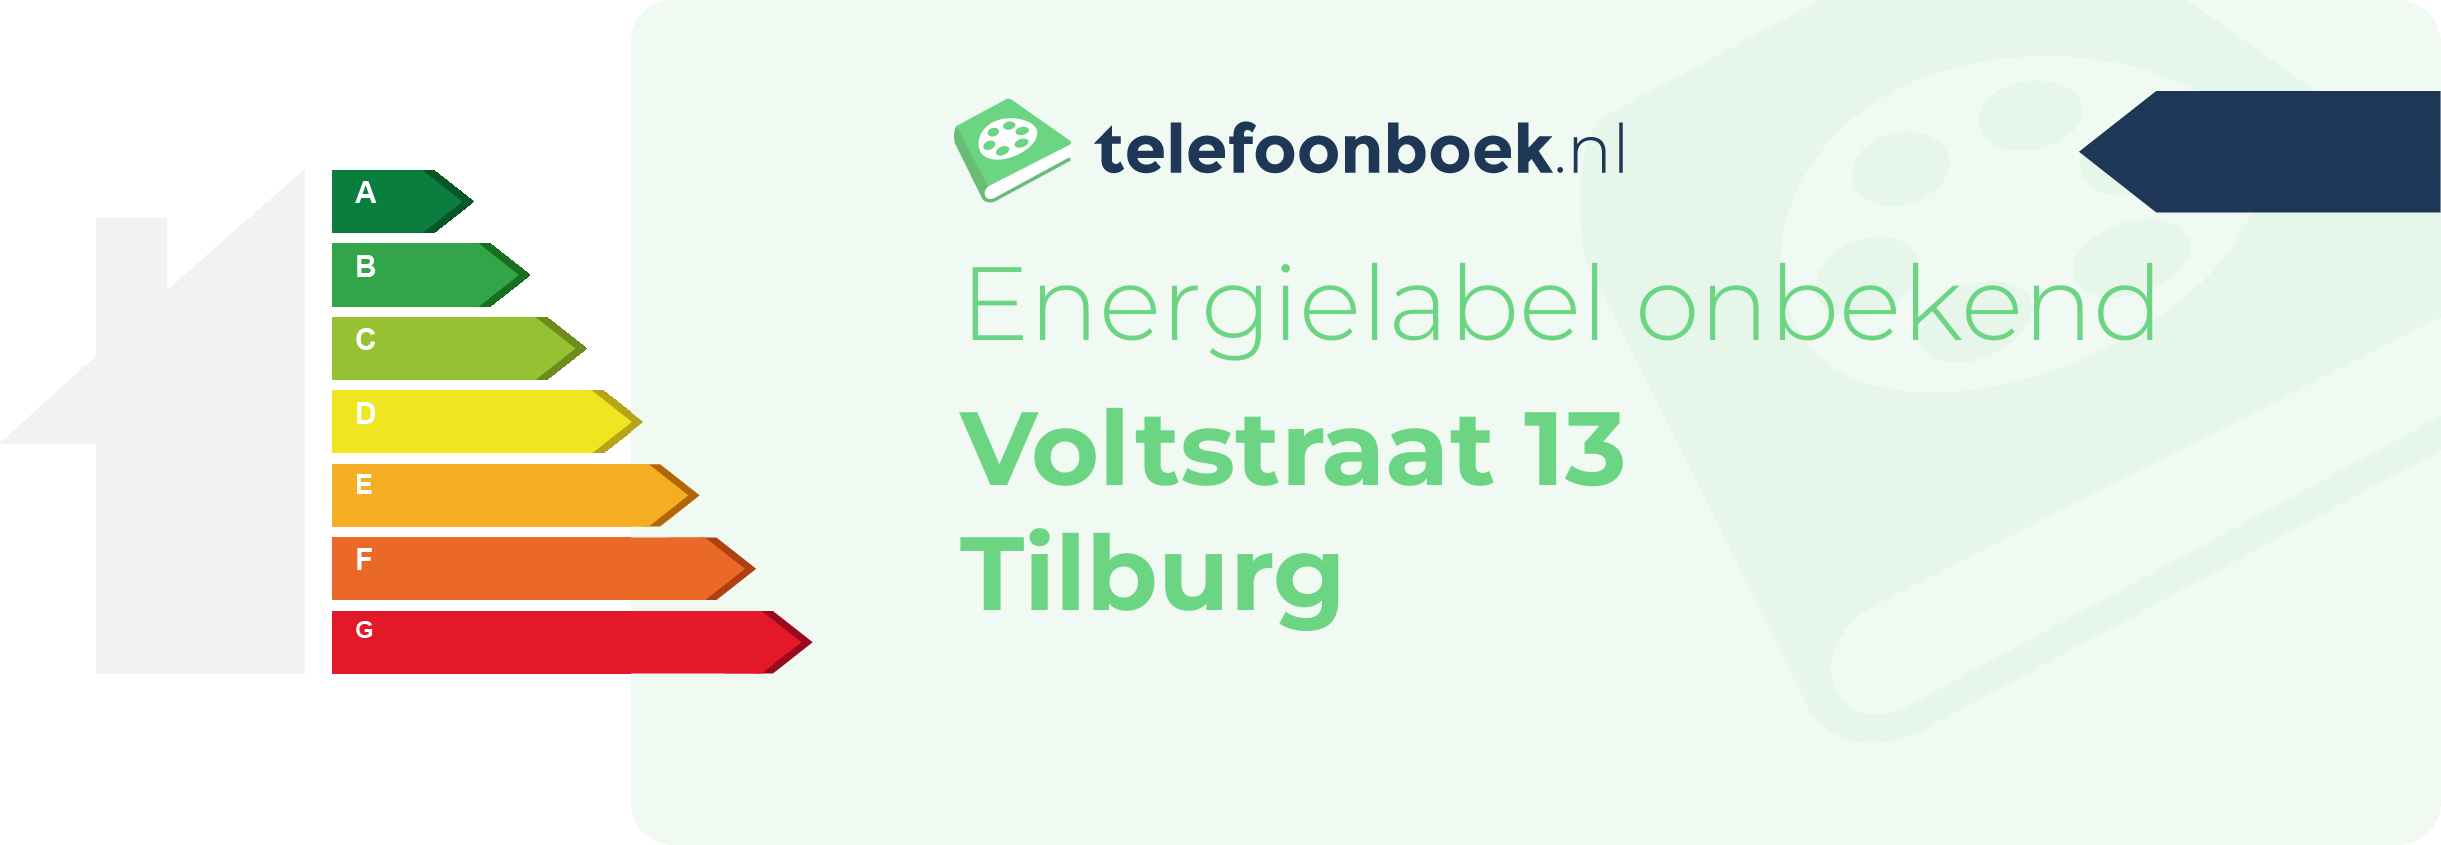 Energielabel Voltstraat 13 Tilburg